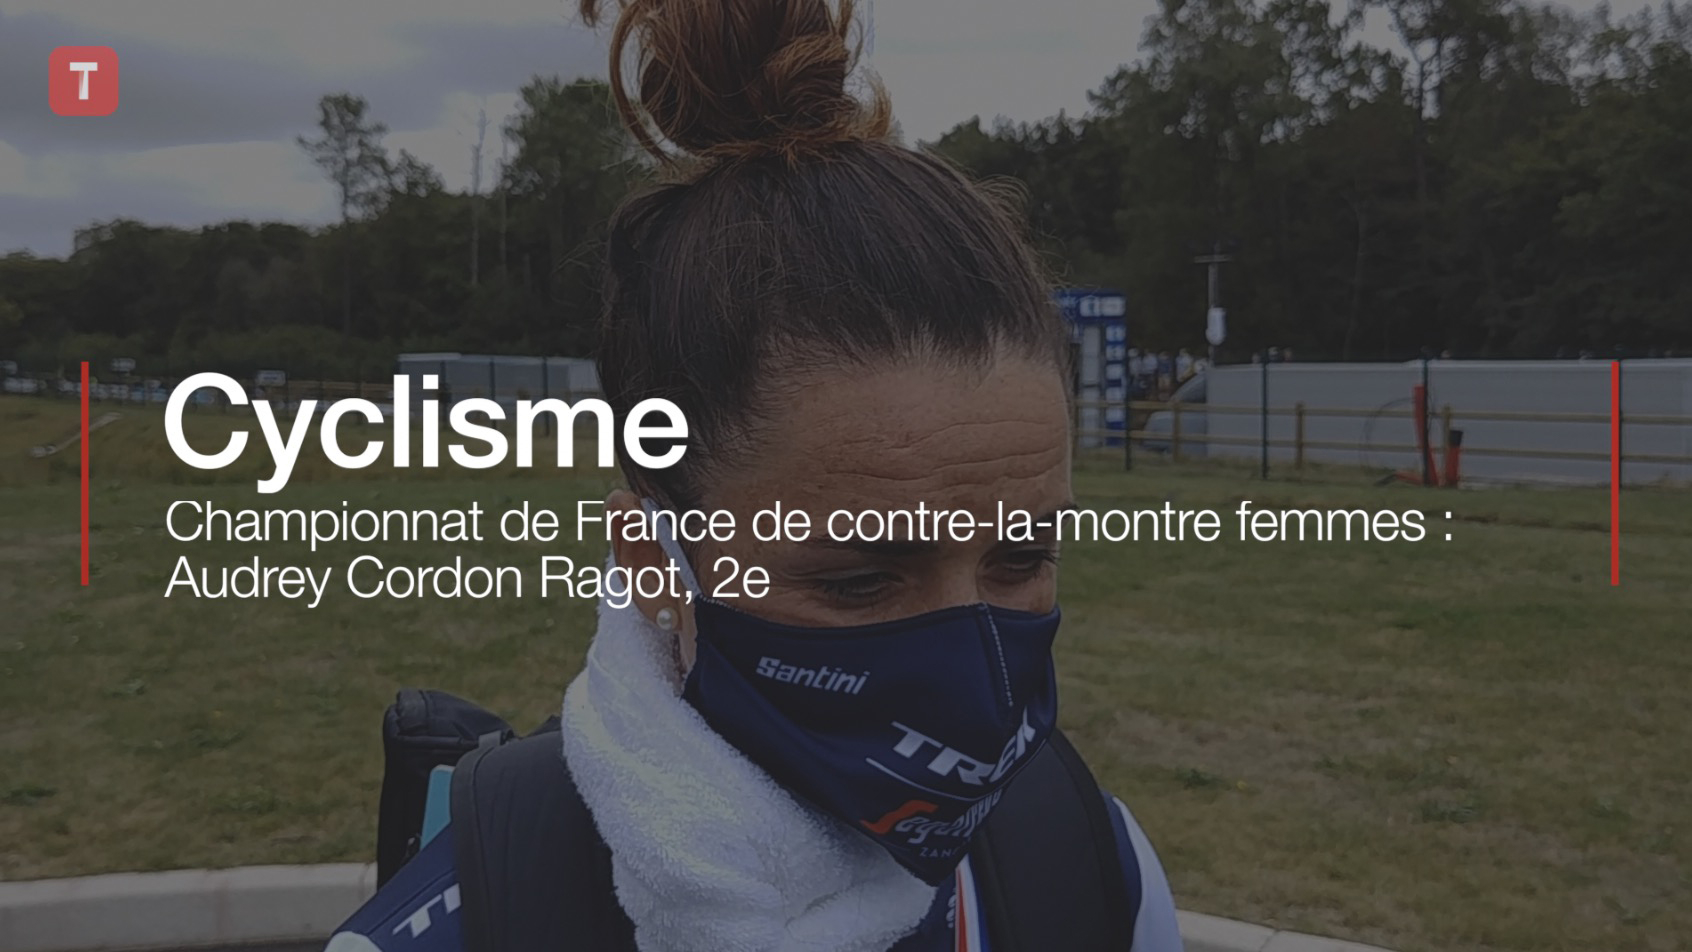  Championnat de France de contre-la-montre femmes : Audrey Cordon Ragot, 2e (Le Télégramme)